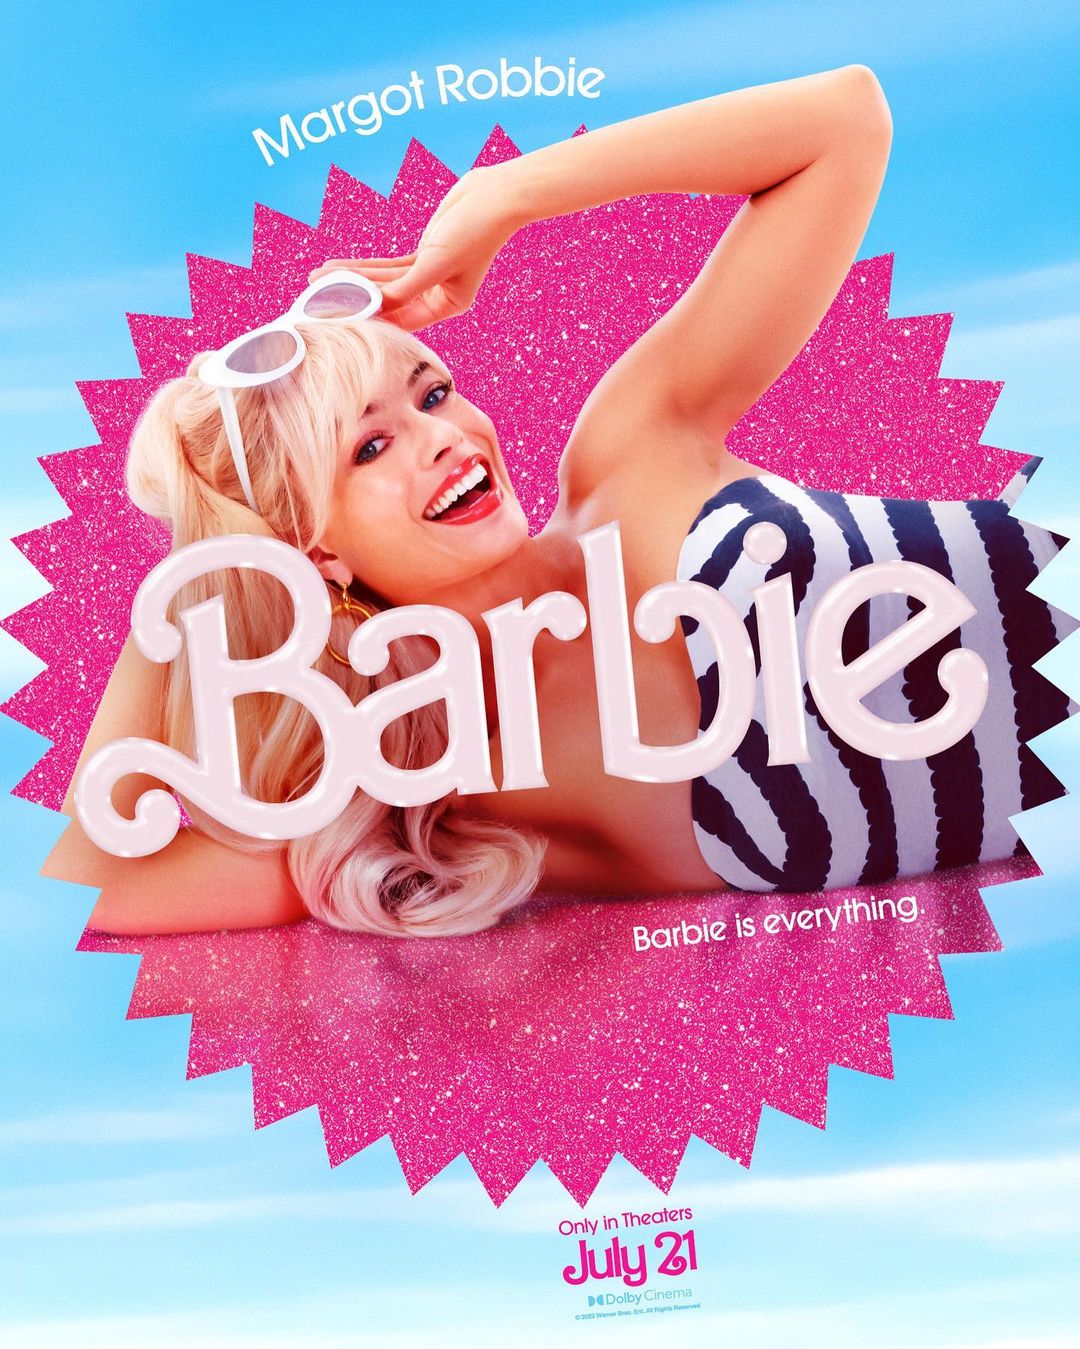  Марго Роби била трет избор за улогата на Барби